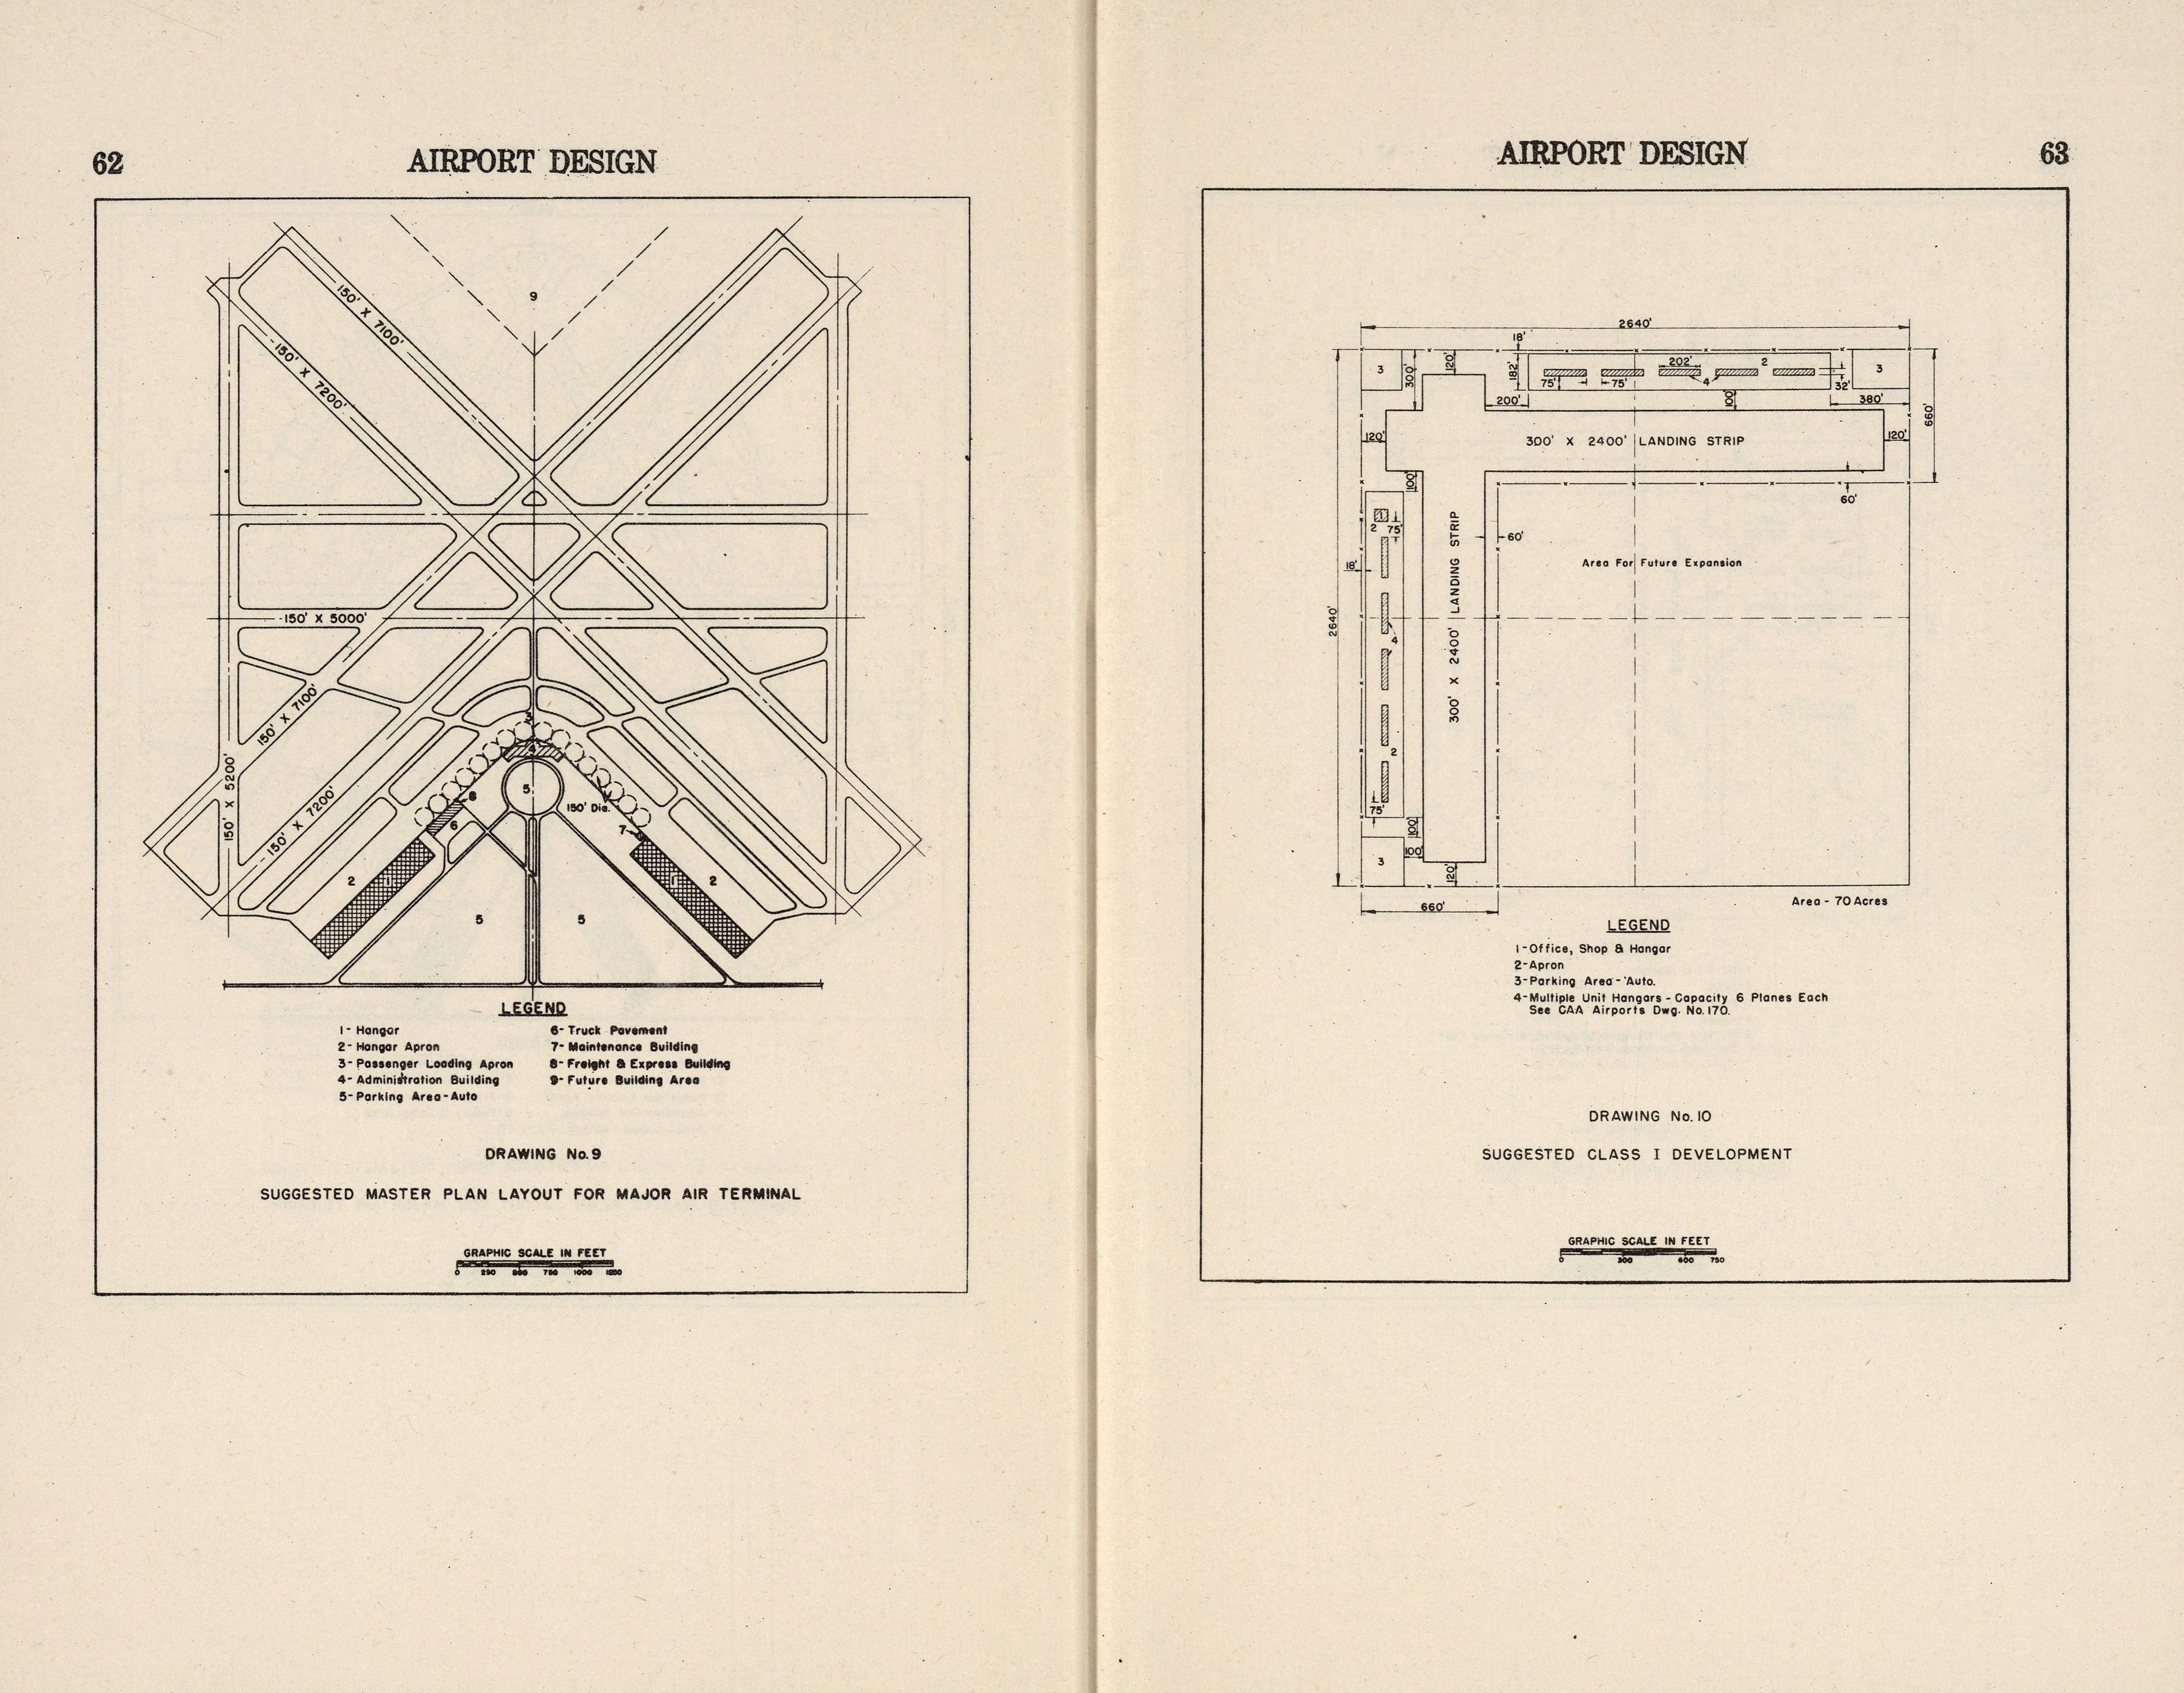 Airport Design / Civil Aeronautics Administration. — Washington, D. C. : U. S. Department of Commerce, 1944